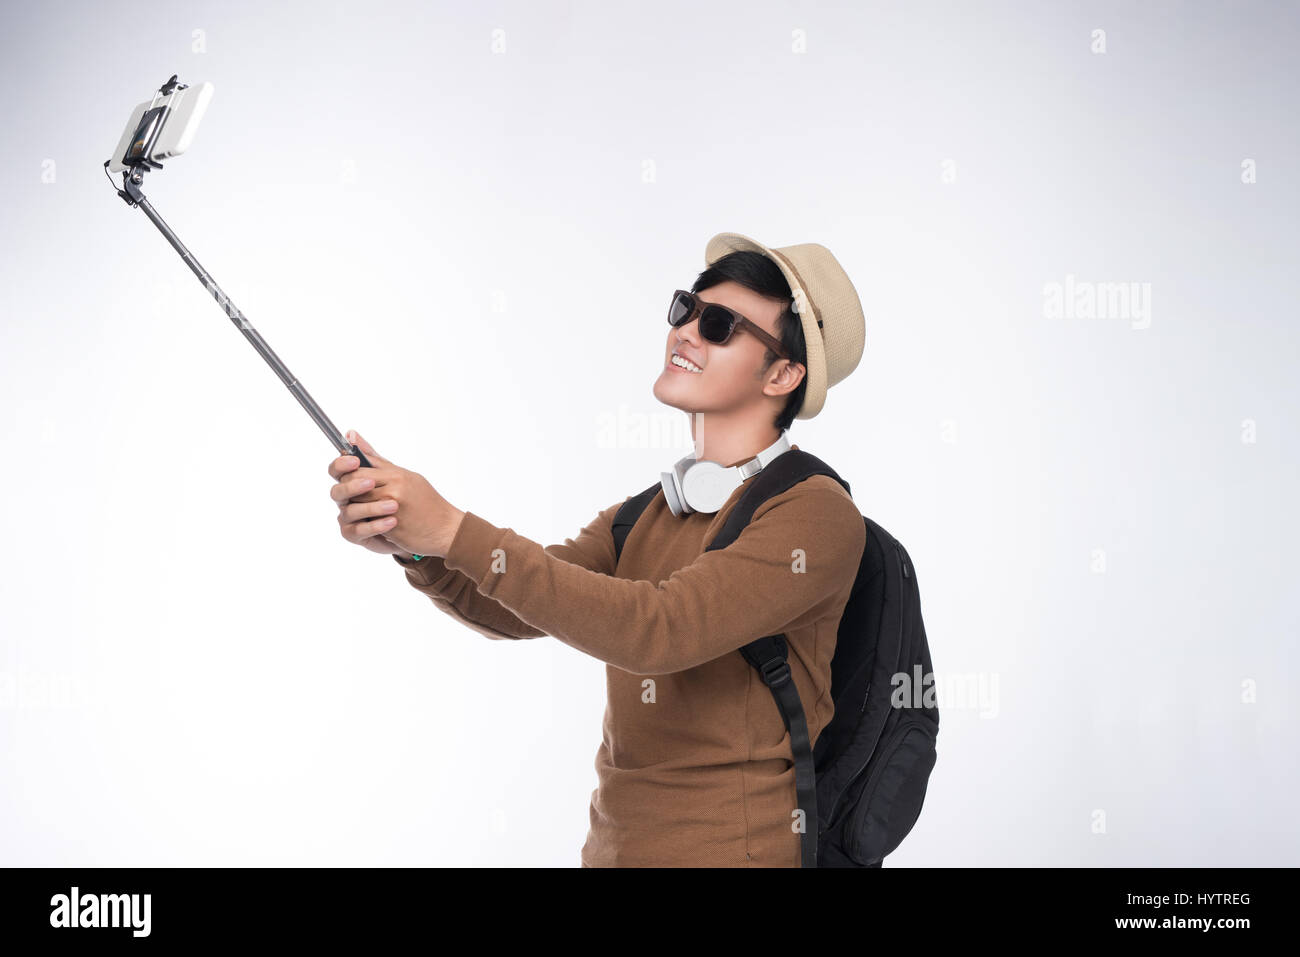 Junge asiatische glücklich unter Selbstporträt Fotografie durch smart-phone Stockfoto